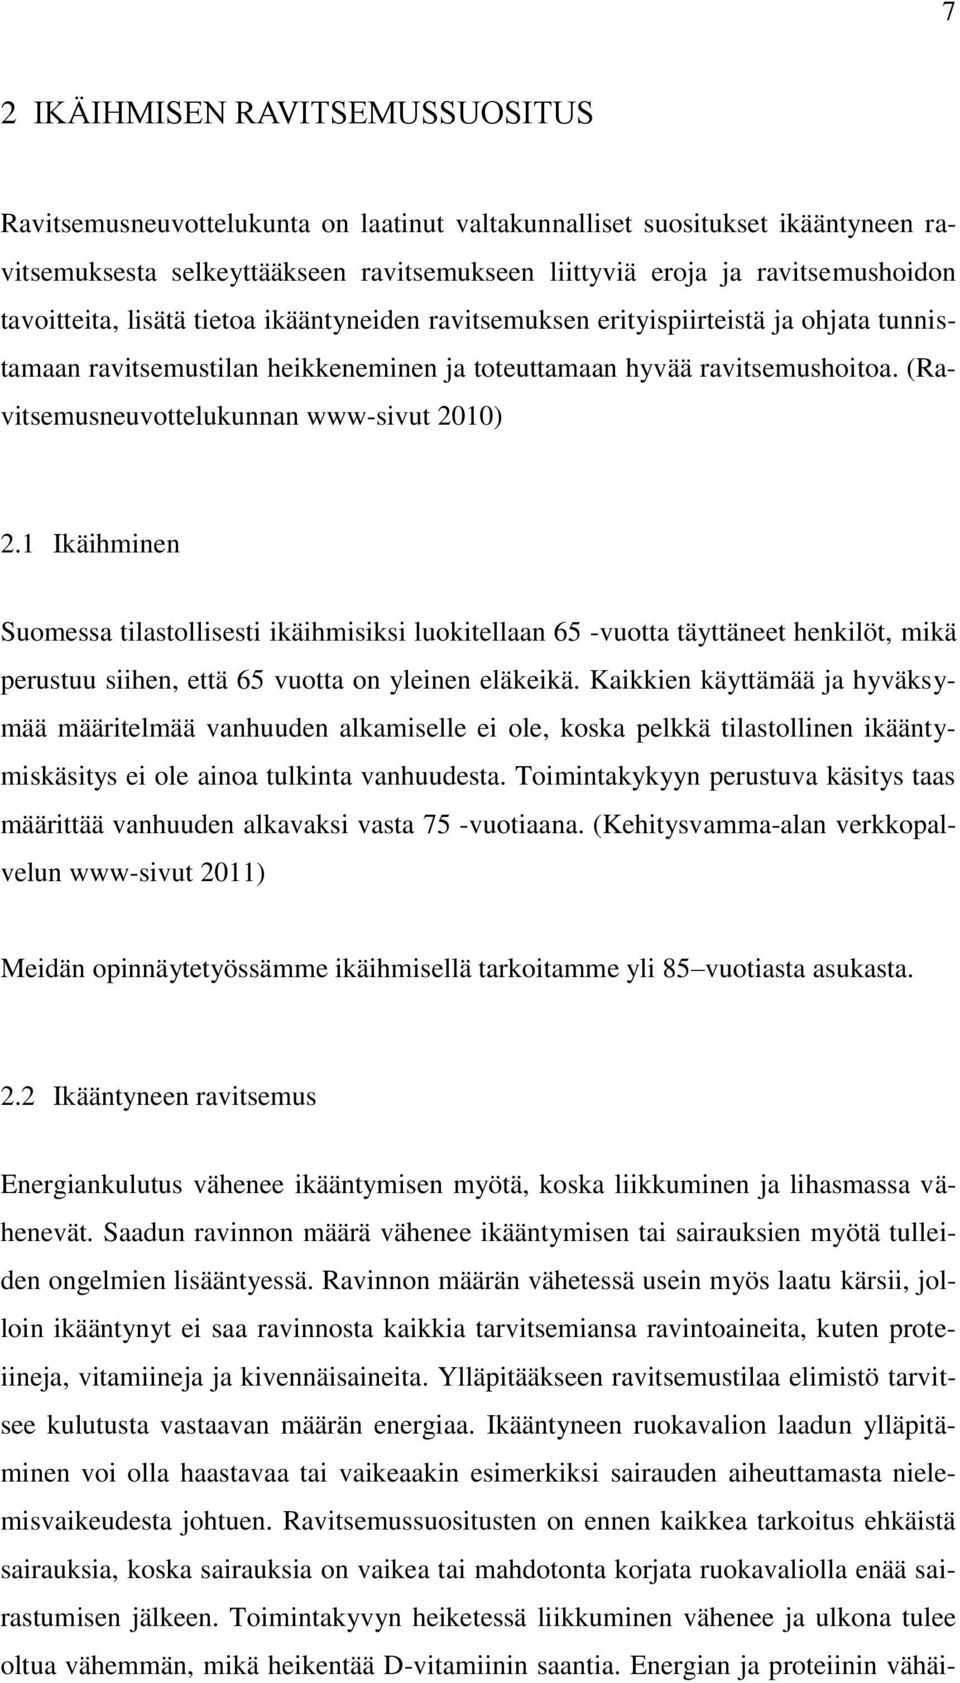 (Ravitsemusneuvottelukunnan www-sivut 2010) 2.1 Ikäihminen Suomessa tilastollisesti ikäihmisiksi luokitellaan 65 -vuotta täyttäneet henkilöt, mikä perustuu siihen, että 65 vuotta on yleinen eläkeikä.